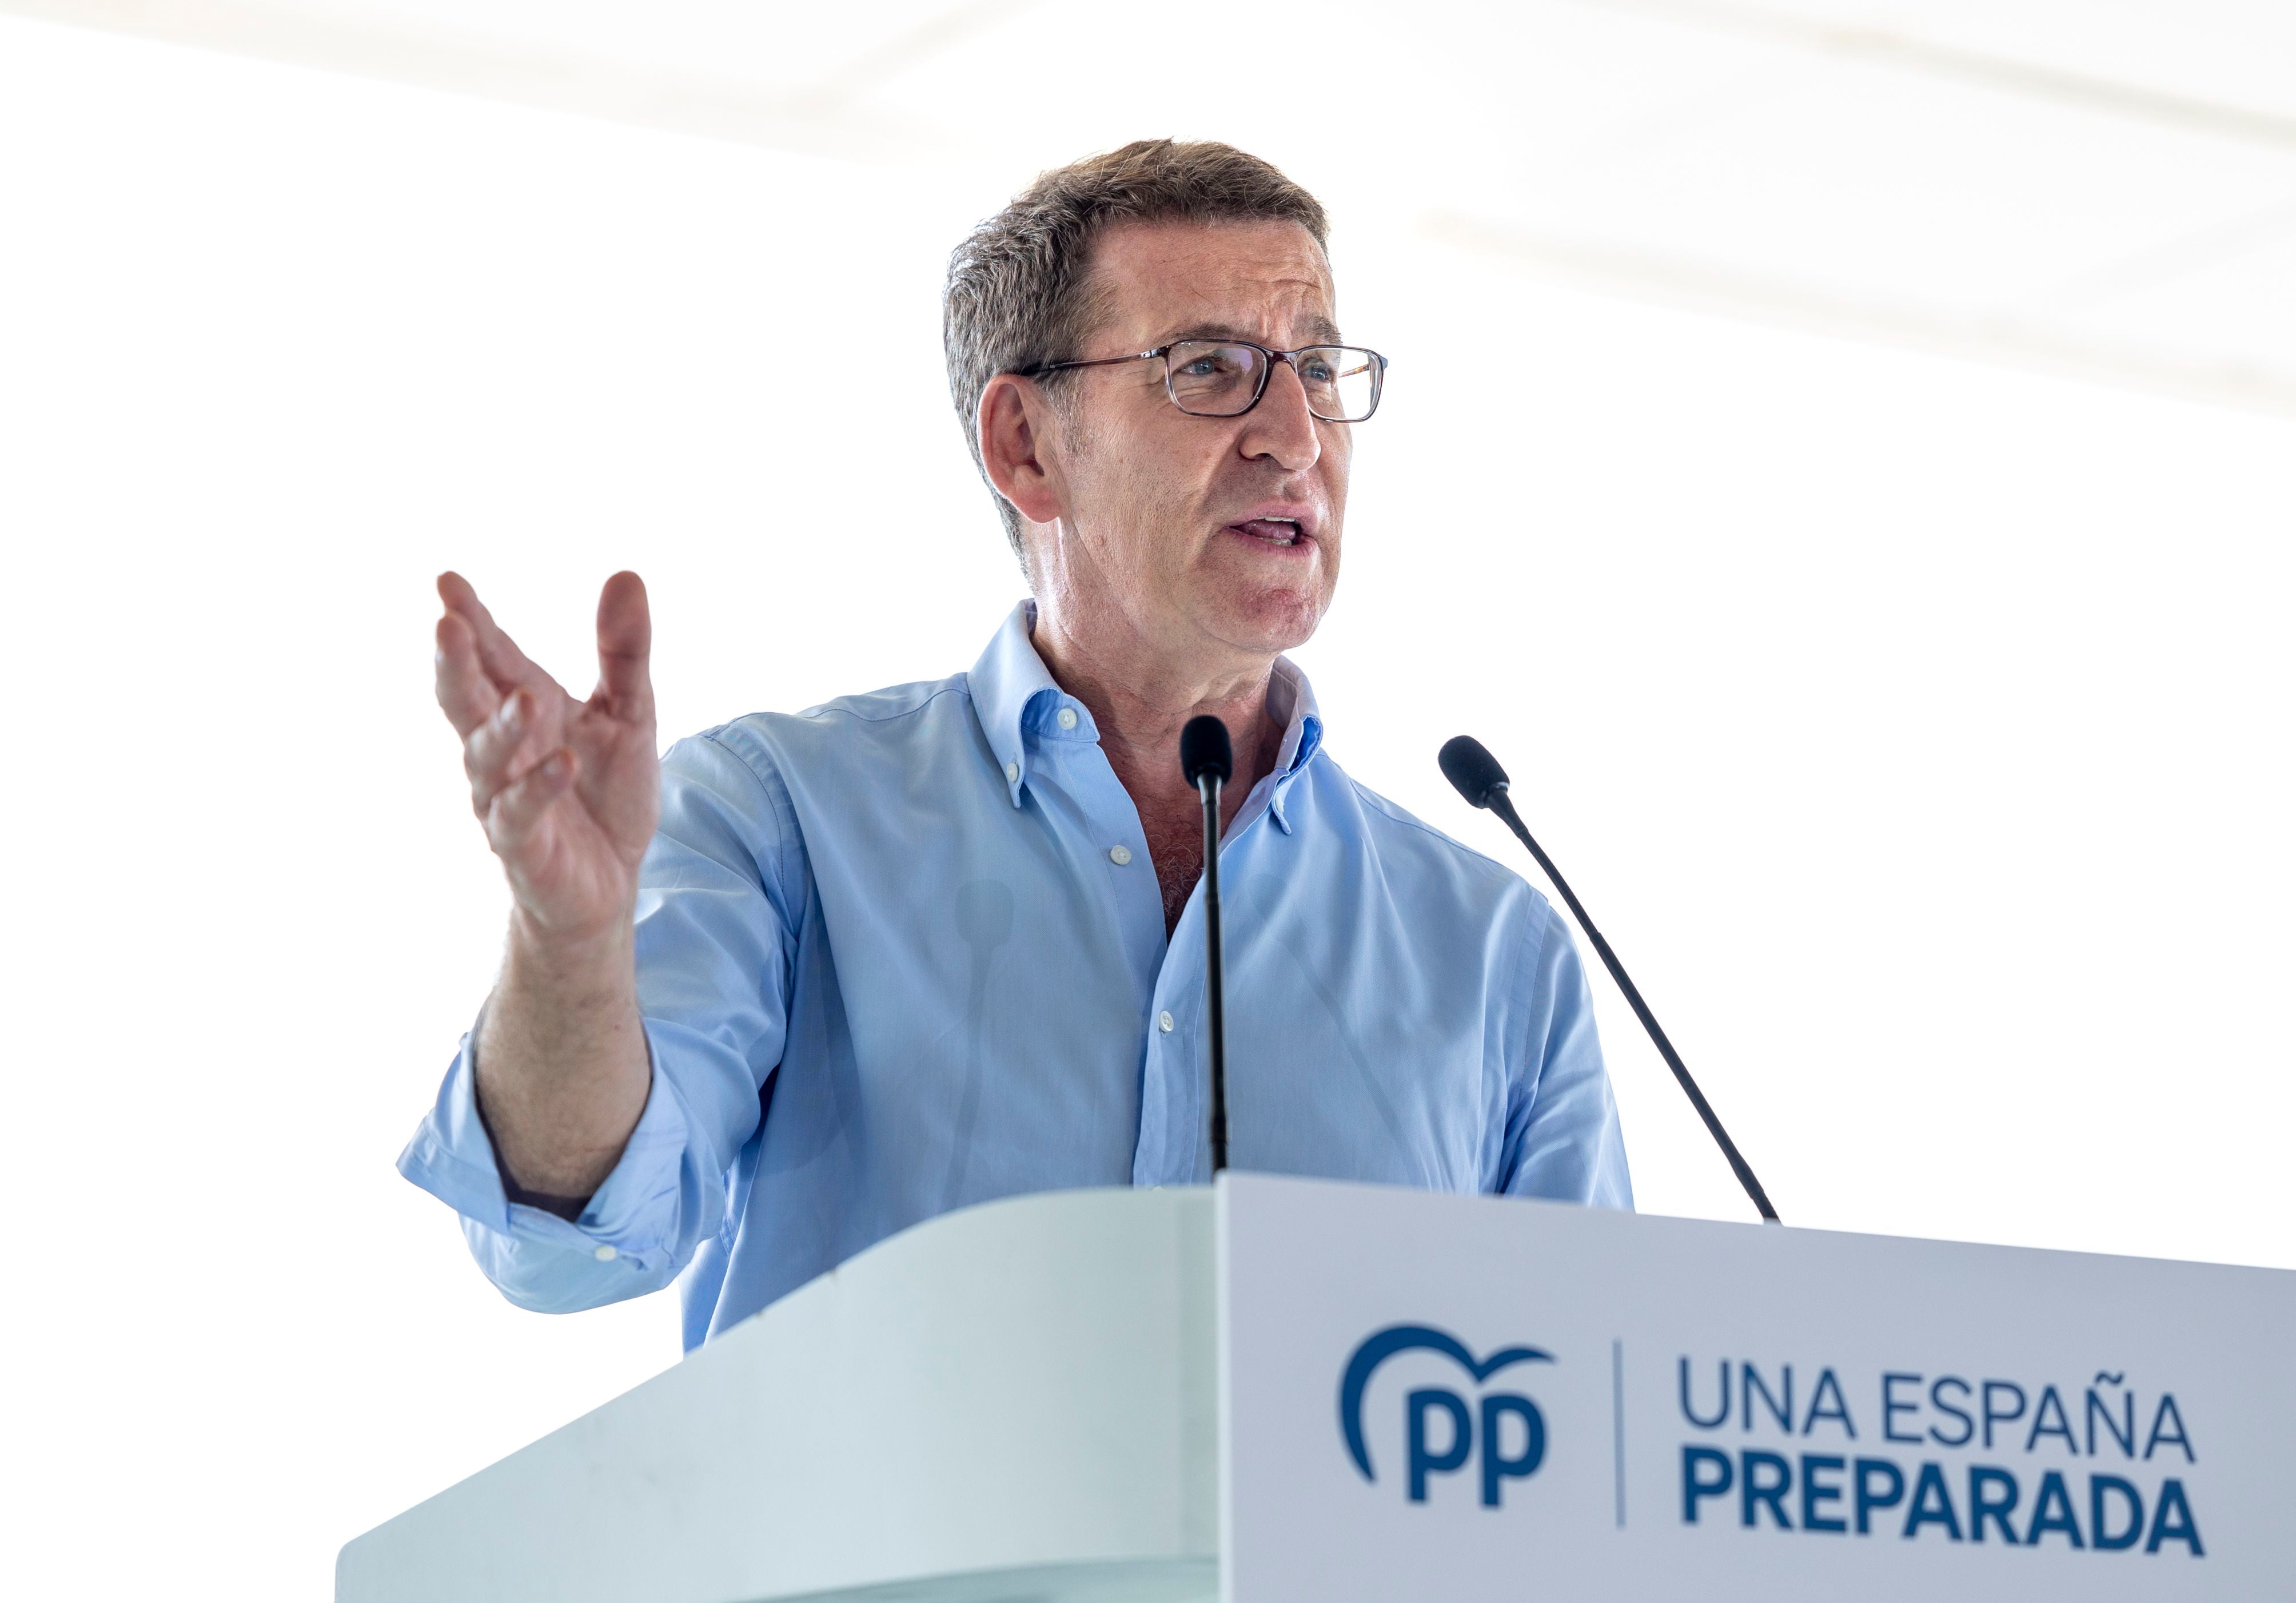 El presidente del PP, Alberto Núñez Feijóo, clausura un acto sectorial sobre sanidad donde interviene el ganador de las elecciones el 28M para presidir la Generalitat, Carlos Mazón.